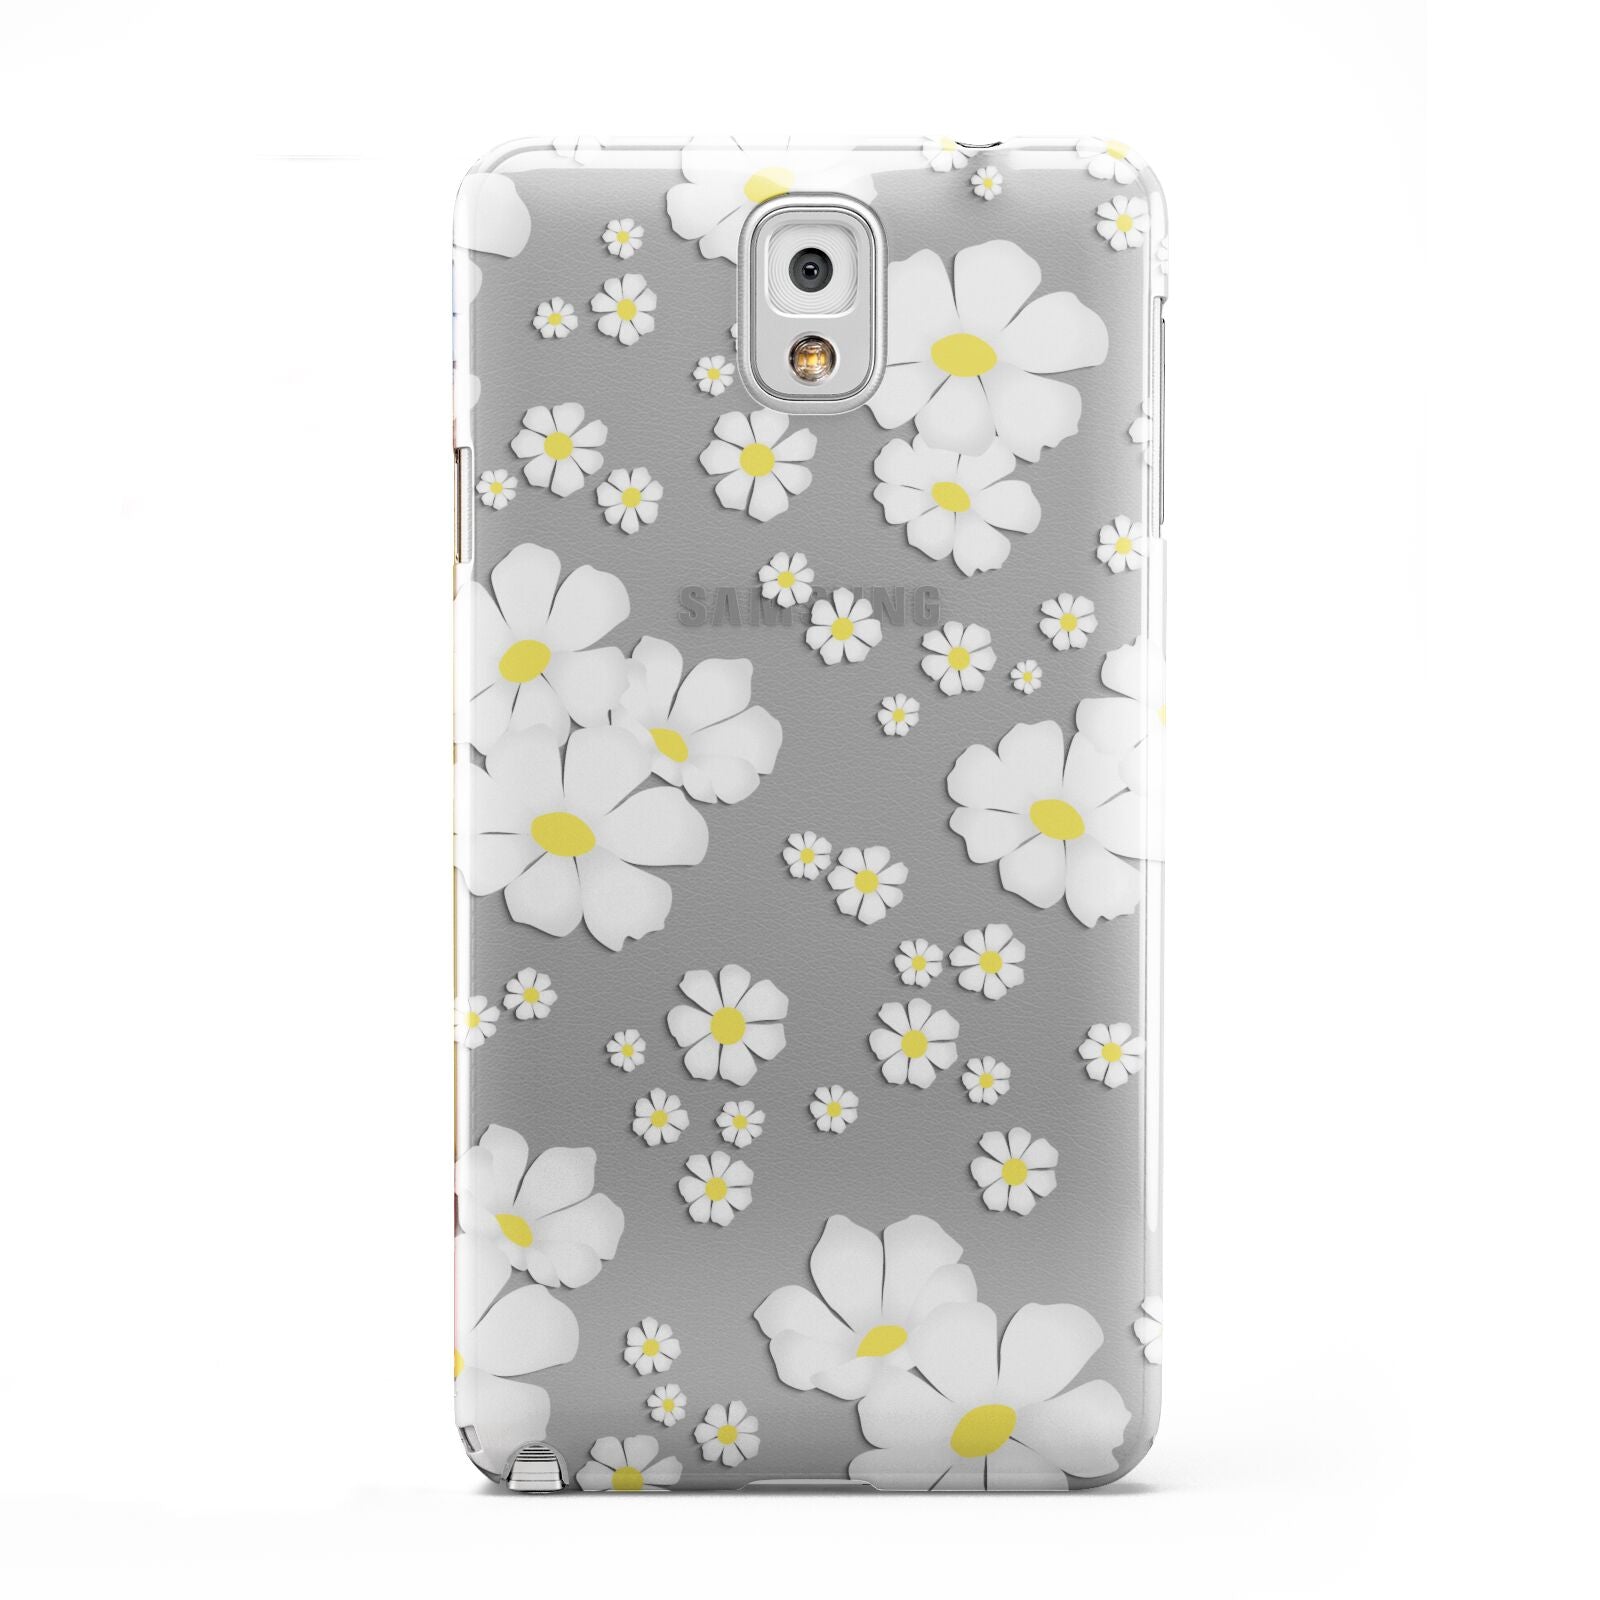 White Daisy Flower Samsung Galaxy Note 3 Case